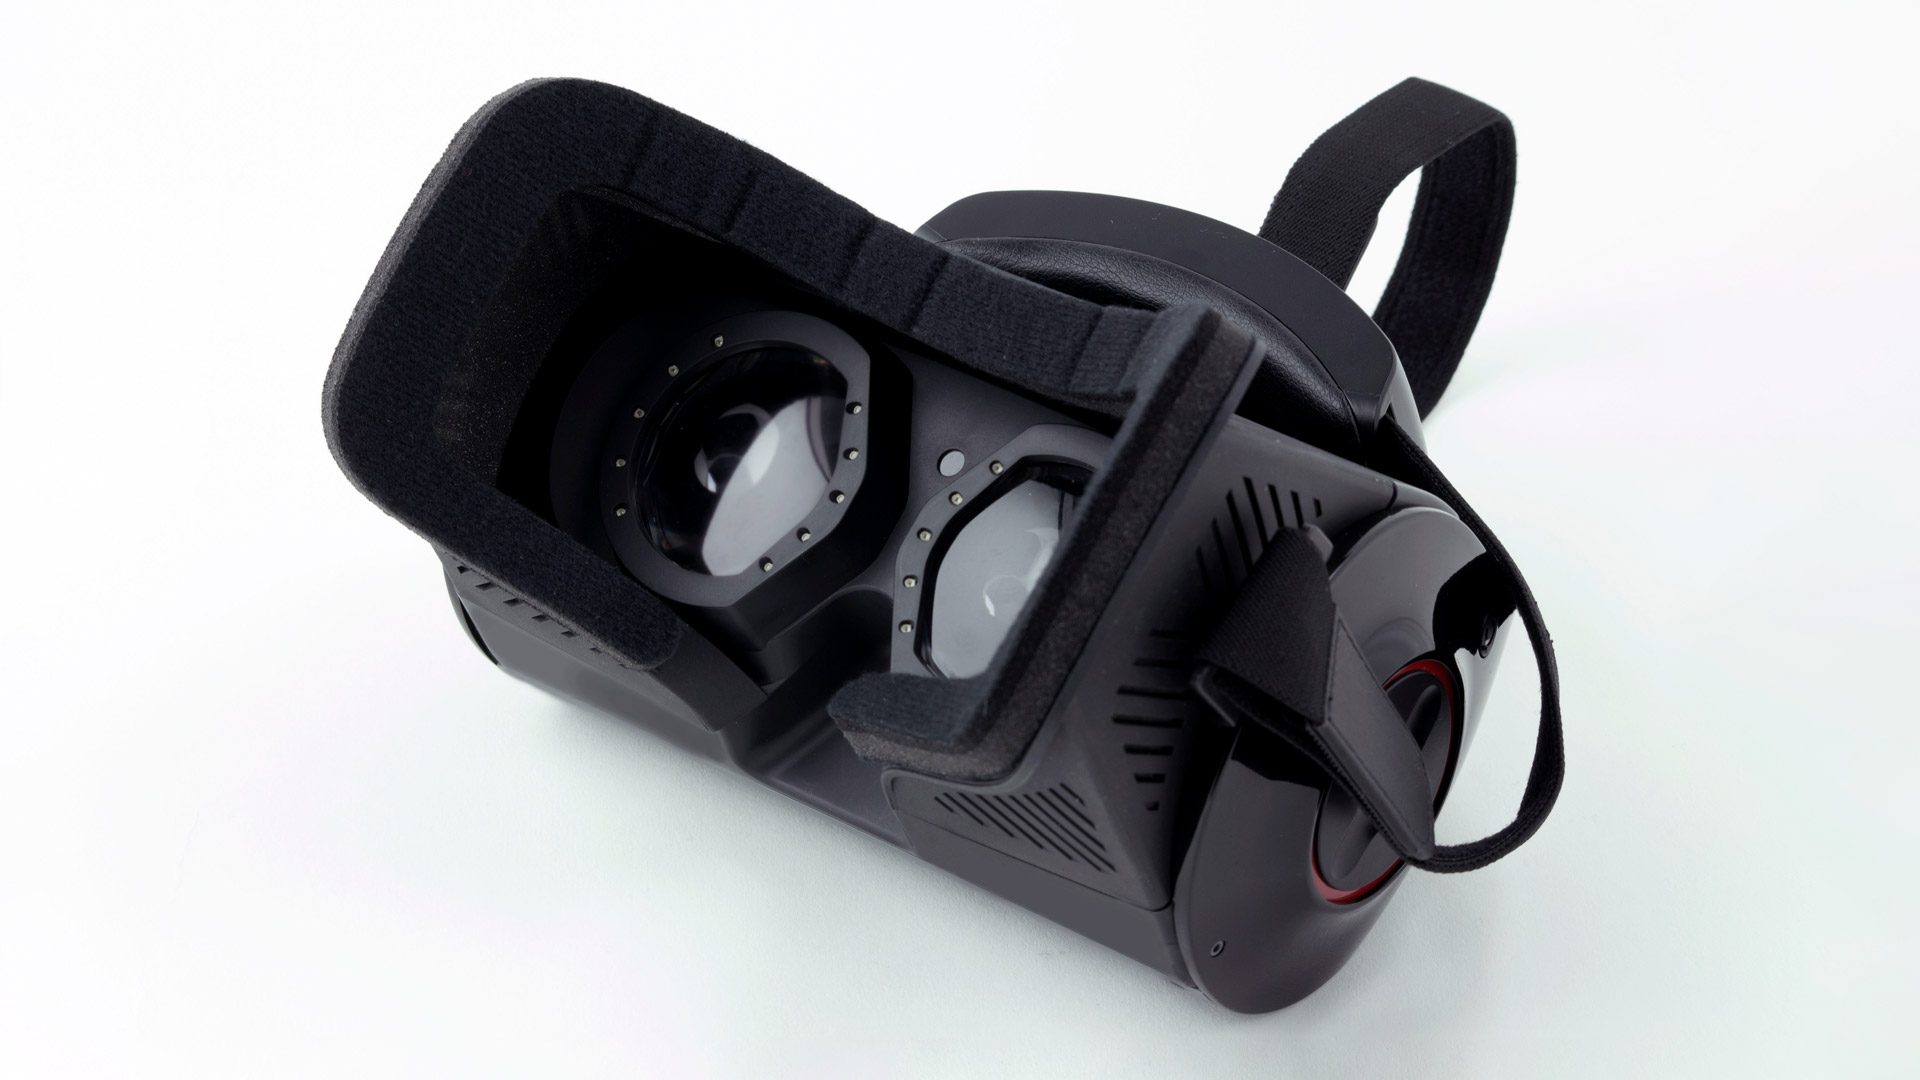 Shadow vr. Трекинг VR. Датчик движения Tobii Eye Tracker 4c. Трекеры для VR. VR трекеры ботинки.